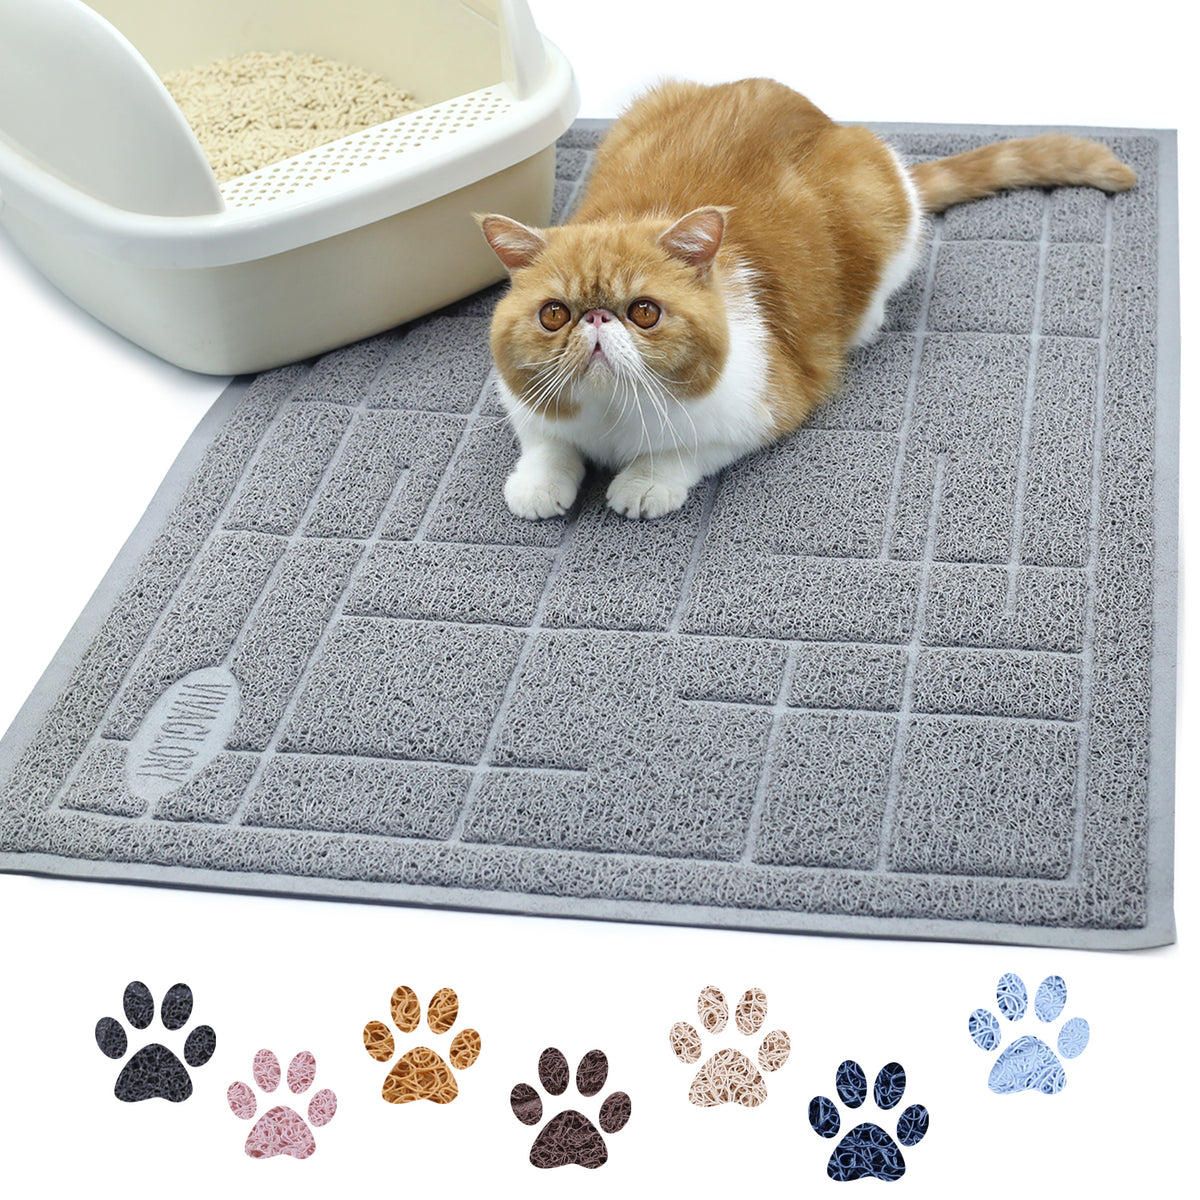  Garoopion Cat Litter Mat, X-Large Size Litter Box Mat